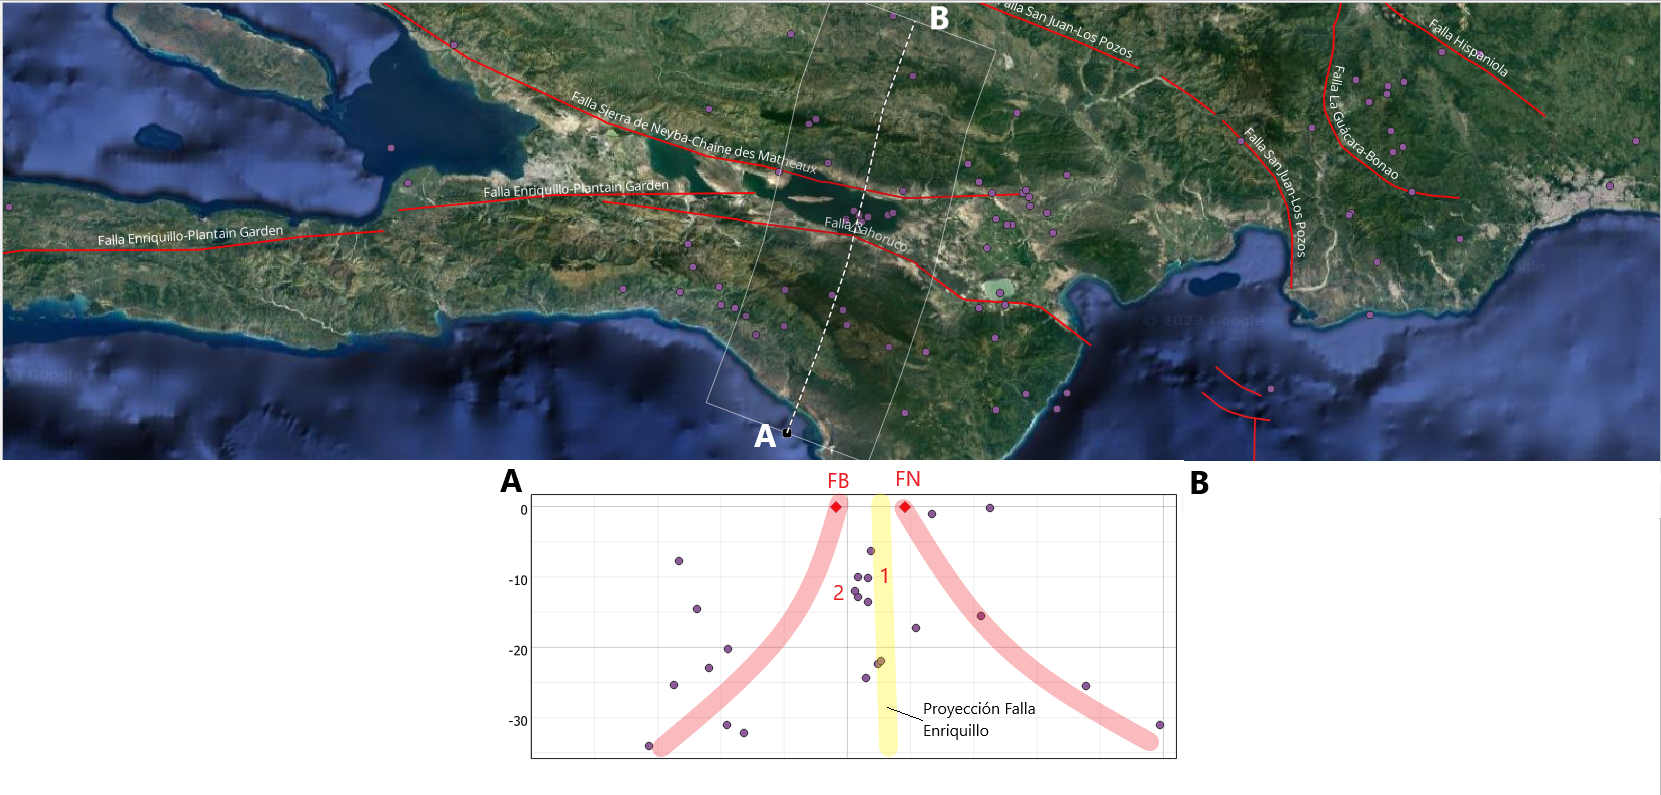 Imagen N°4: Detalle sismicidad región suroeste de La Española durante octubre 2023. Sección transversal A-B en recuadro de abajo mostrando hipocentros y proyección en profundidad de fallas de la región. FB= Falla Bahoruco, FN= Falla de Neyba, 1= evento de fecha 1 de octubre Ml 3.4, 2= evento de fecha 10 de octubre Ml 2.5